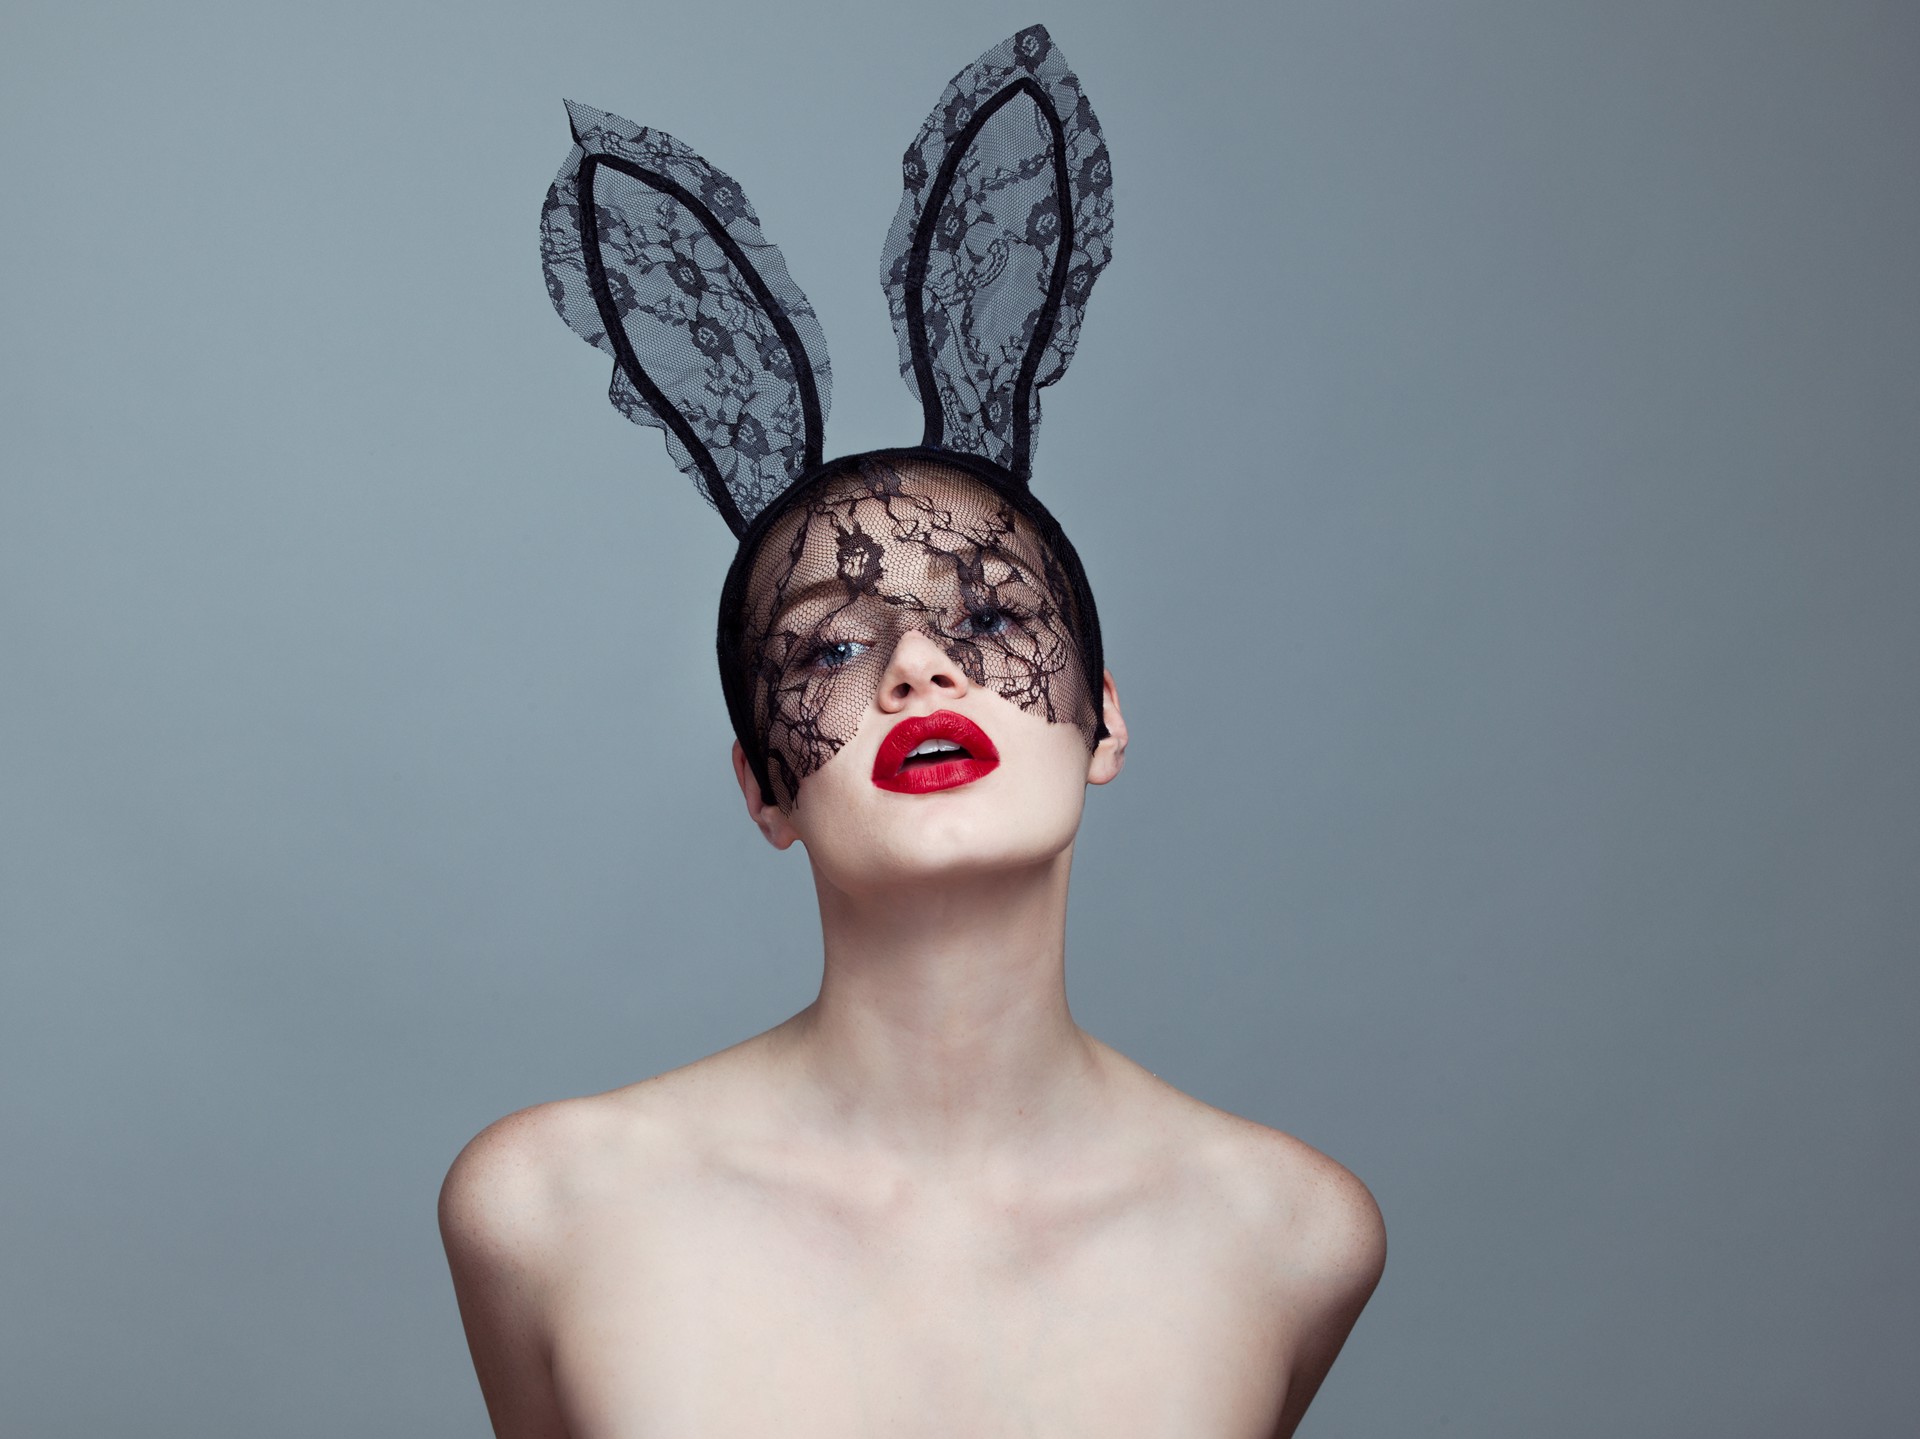 Bunny II by Tyler Shields